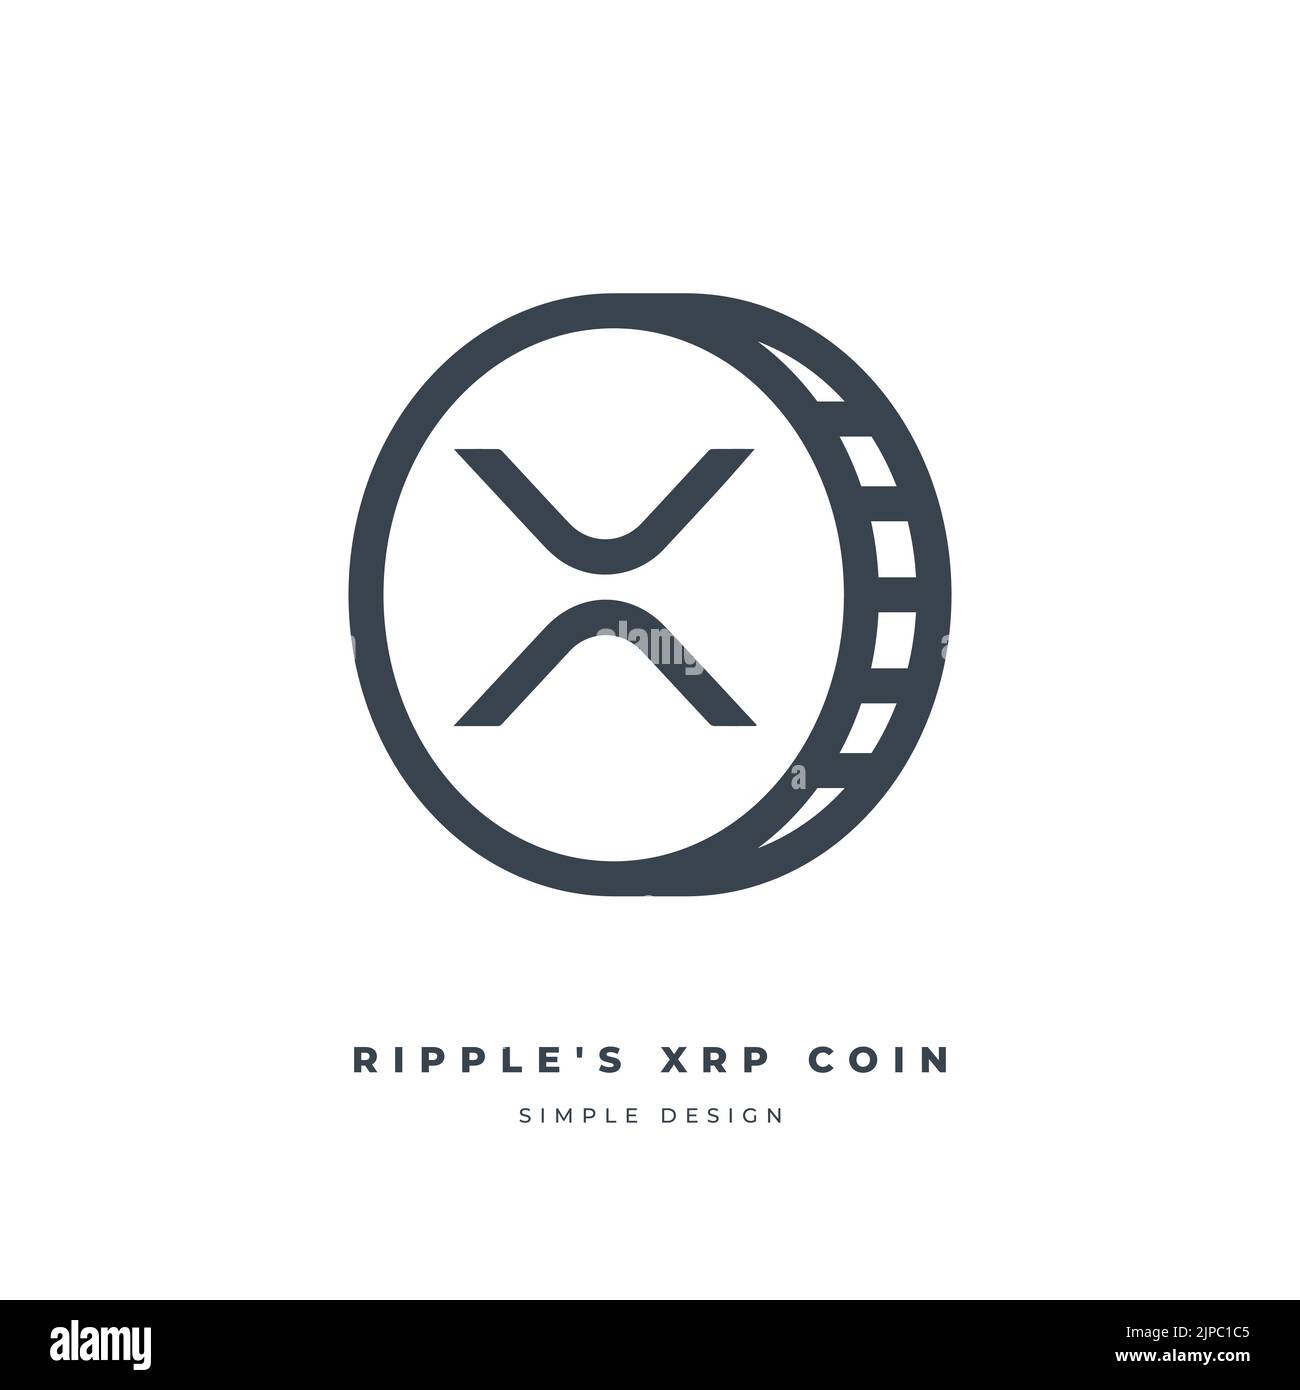 Icona della linea di criptovaluta XRP Coin ripple isolata su sfondo bianco. Valuta digitale. Illustrazione Vettoriale